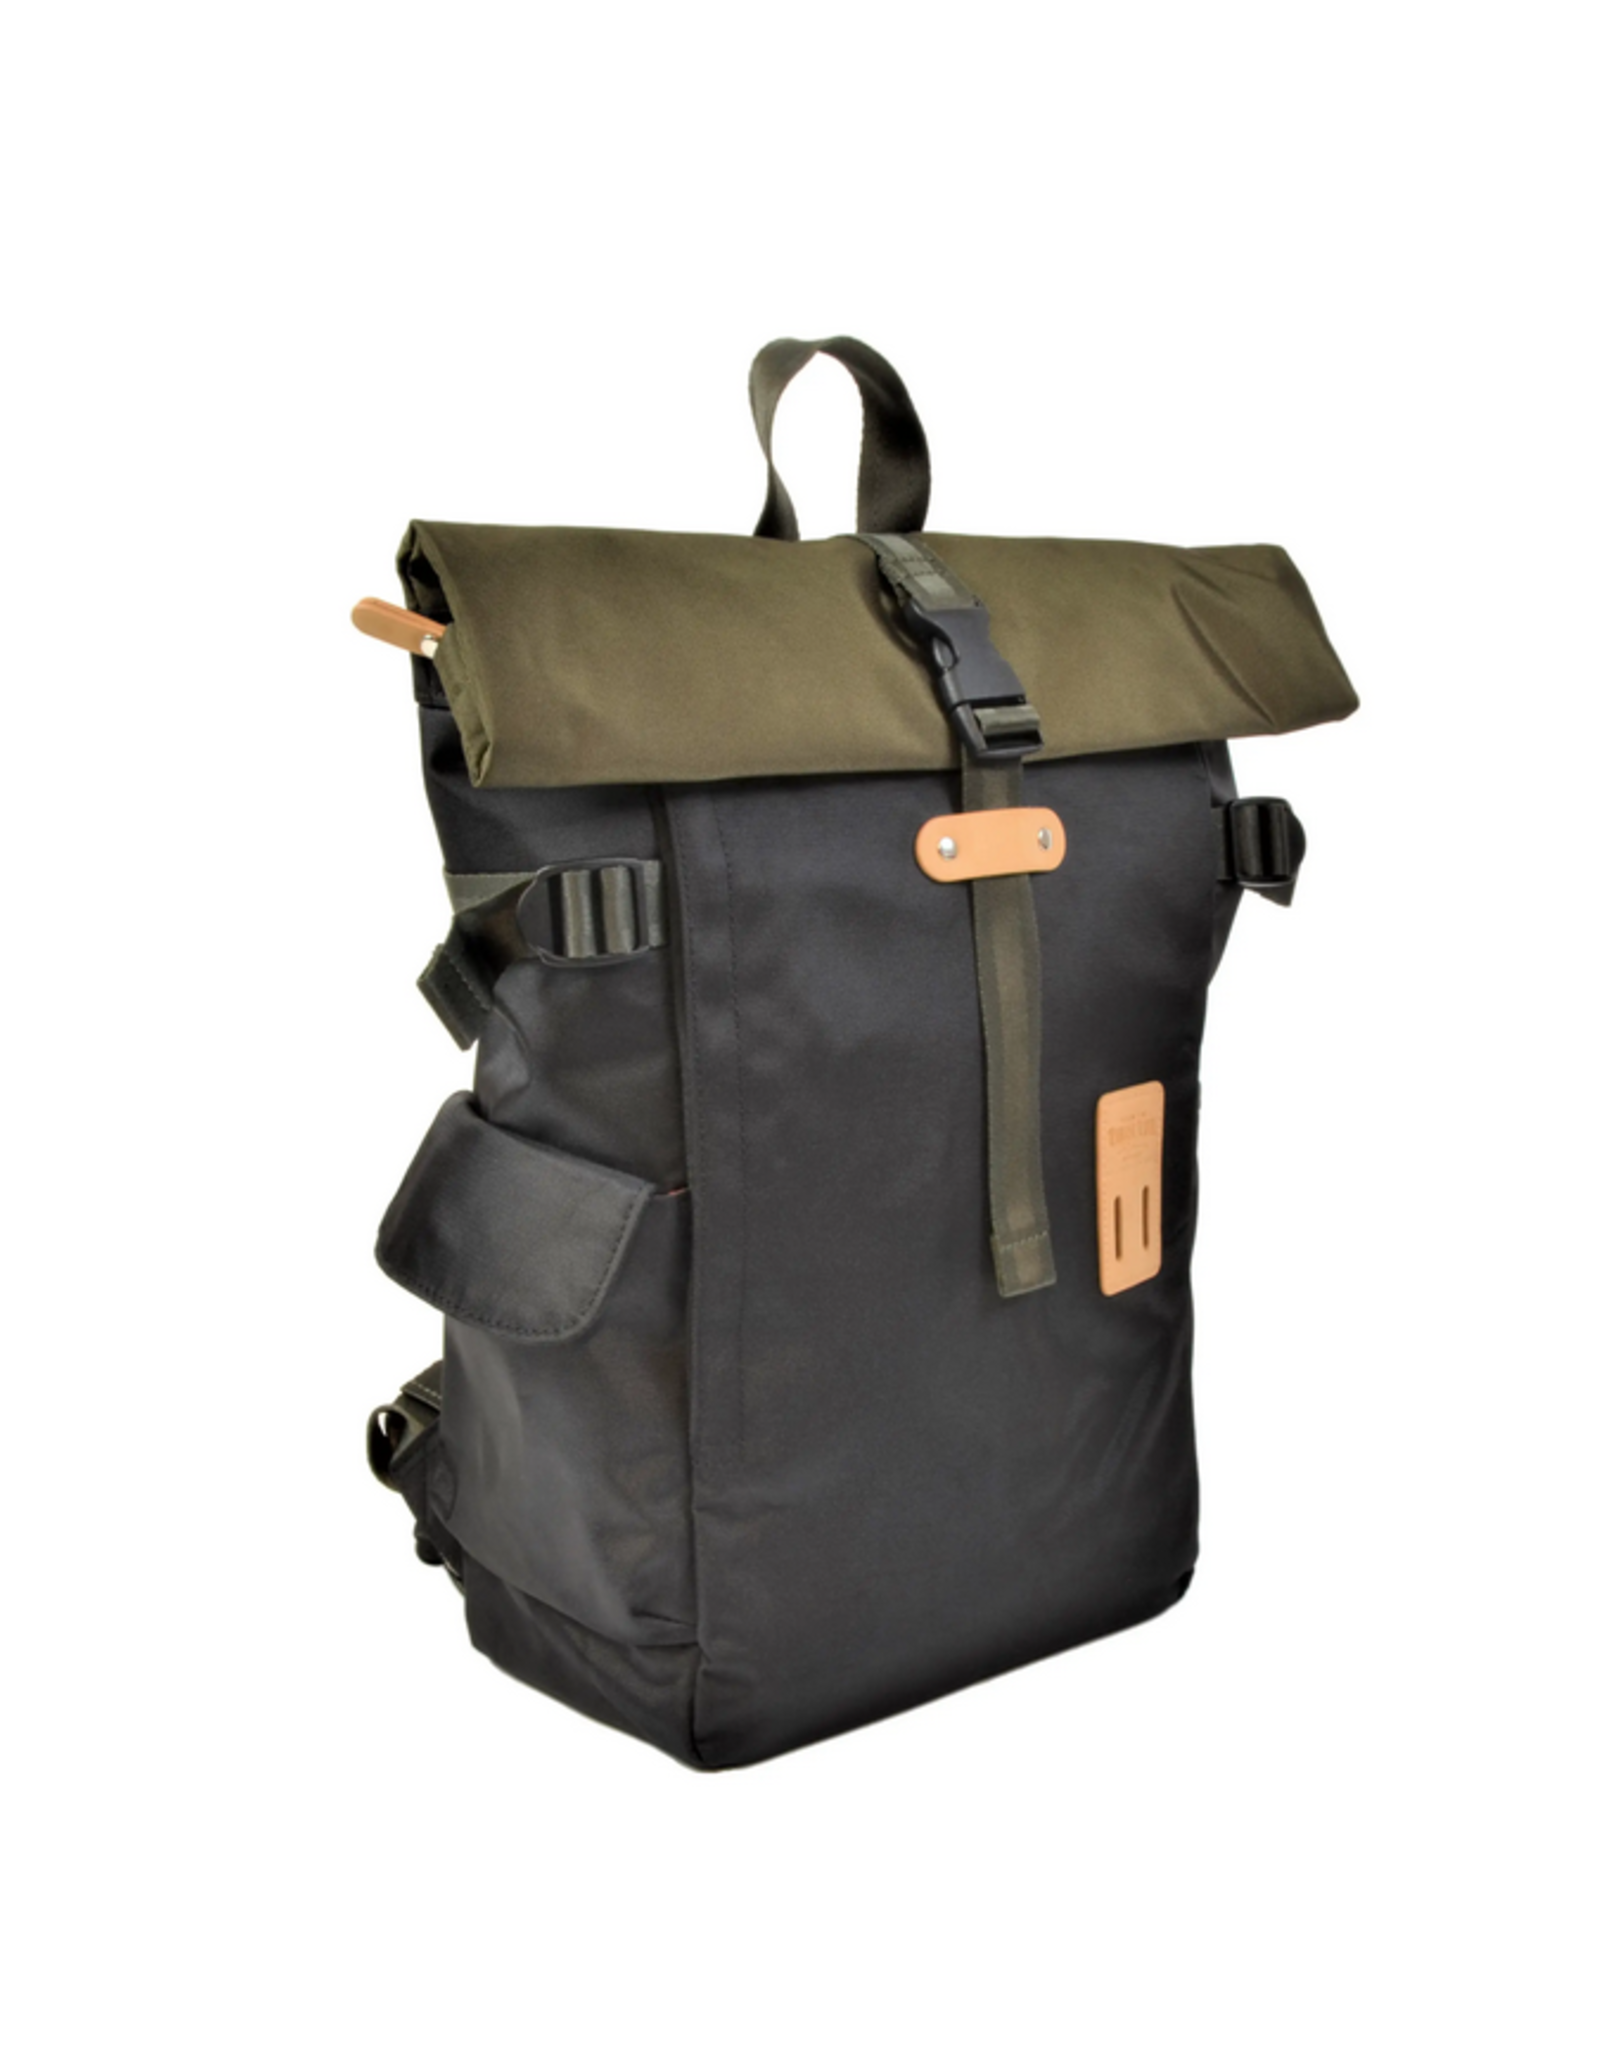 Rolltop Backpack - Olive/Black